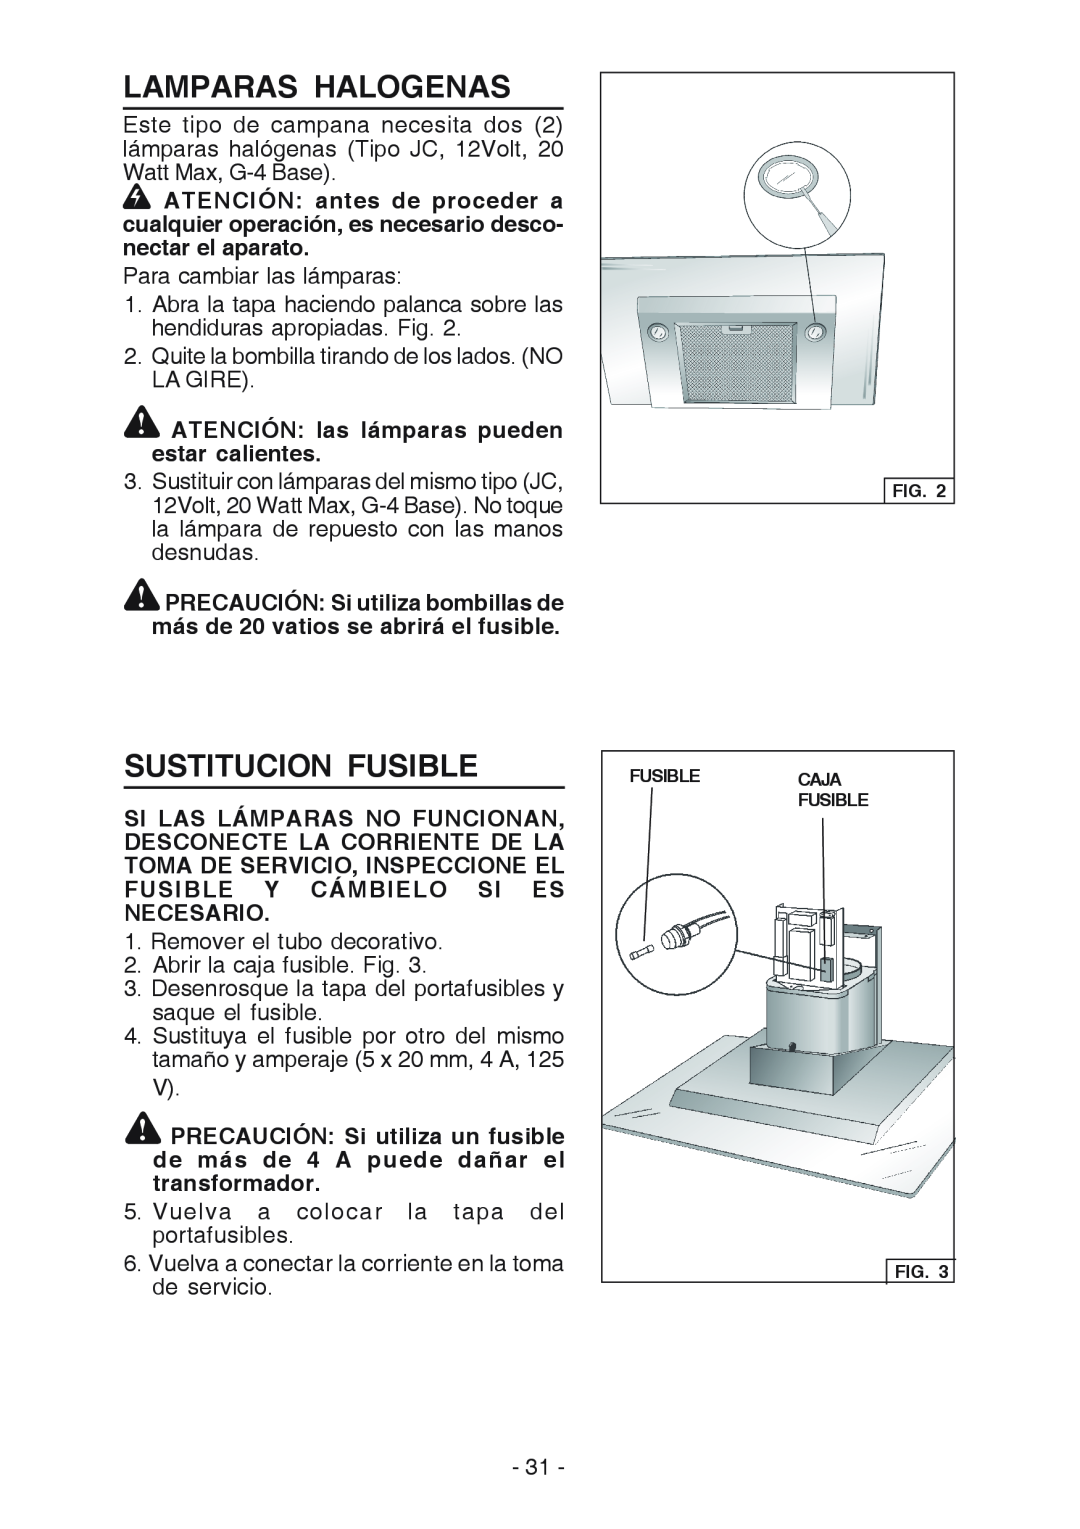 Broan WC26I manual Lamparas Halogenas, Sustitucion Fusible, ATENCIÓN las lámparas pueden estar calientes 